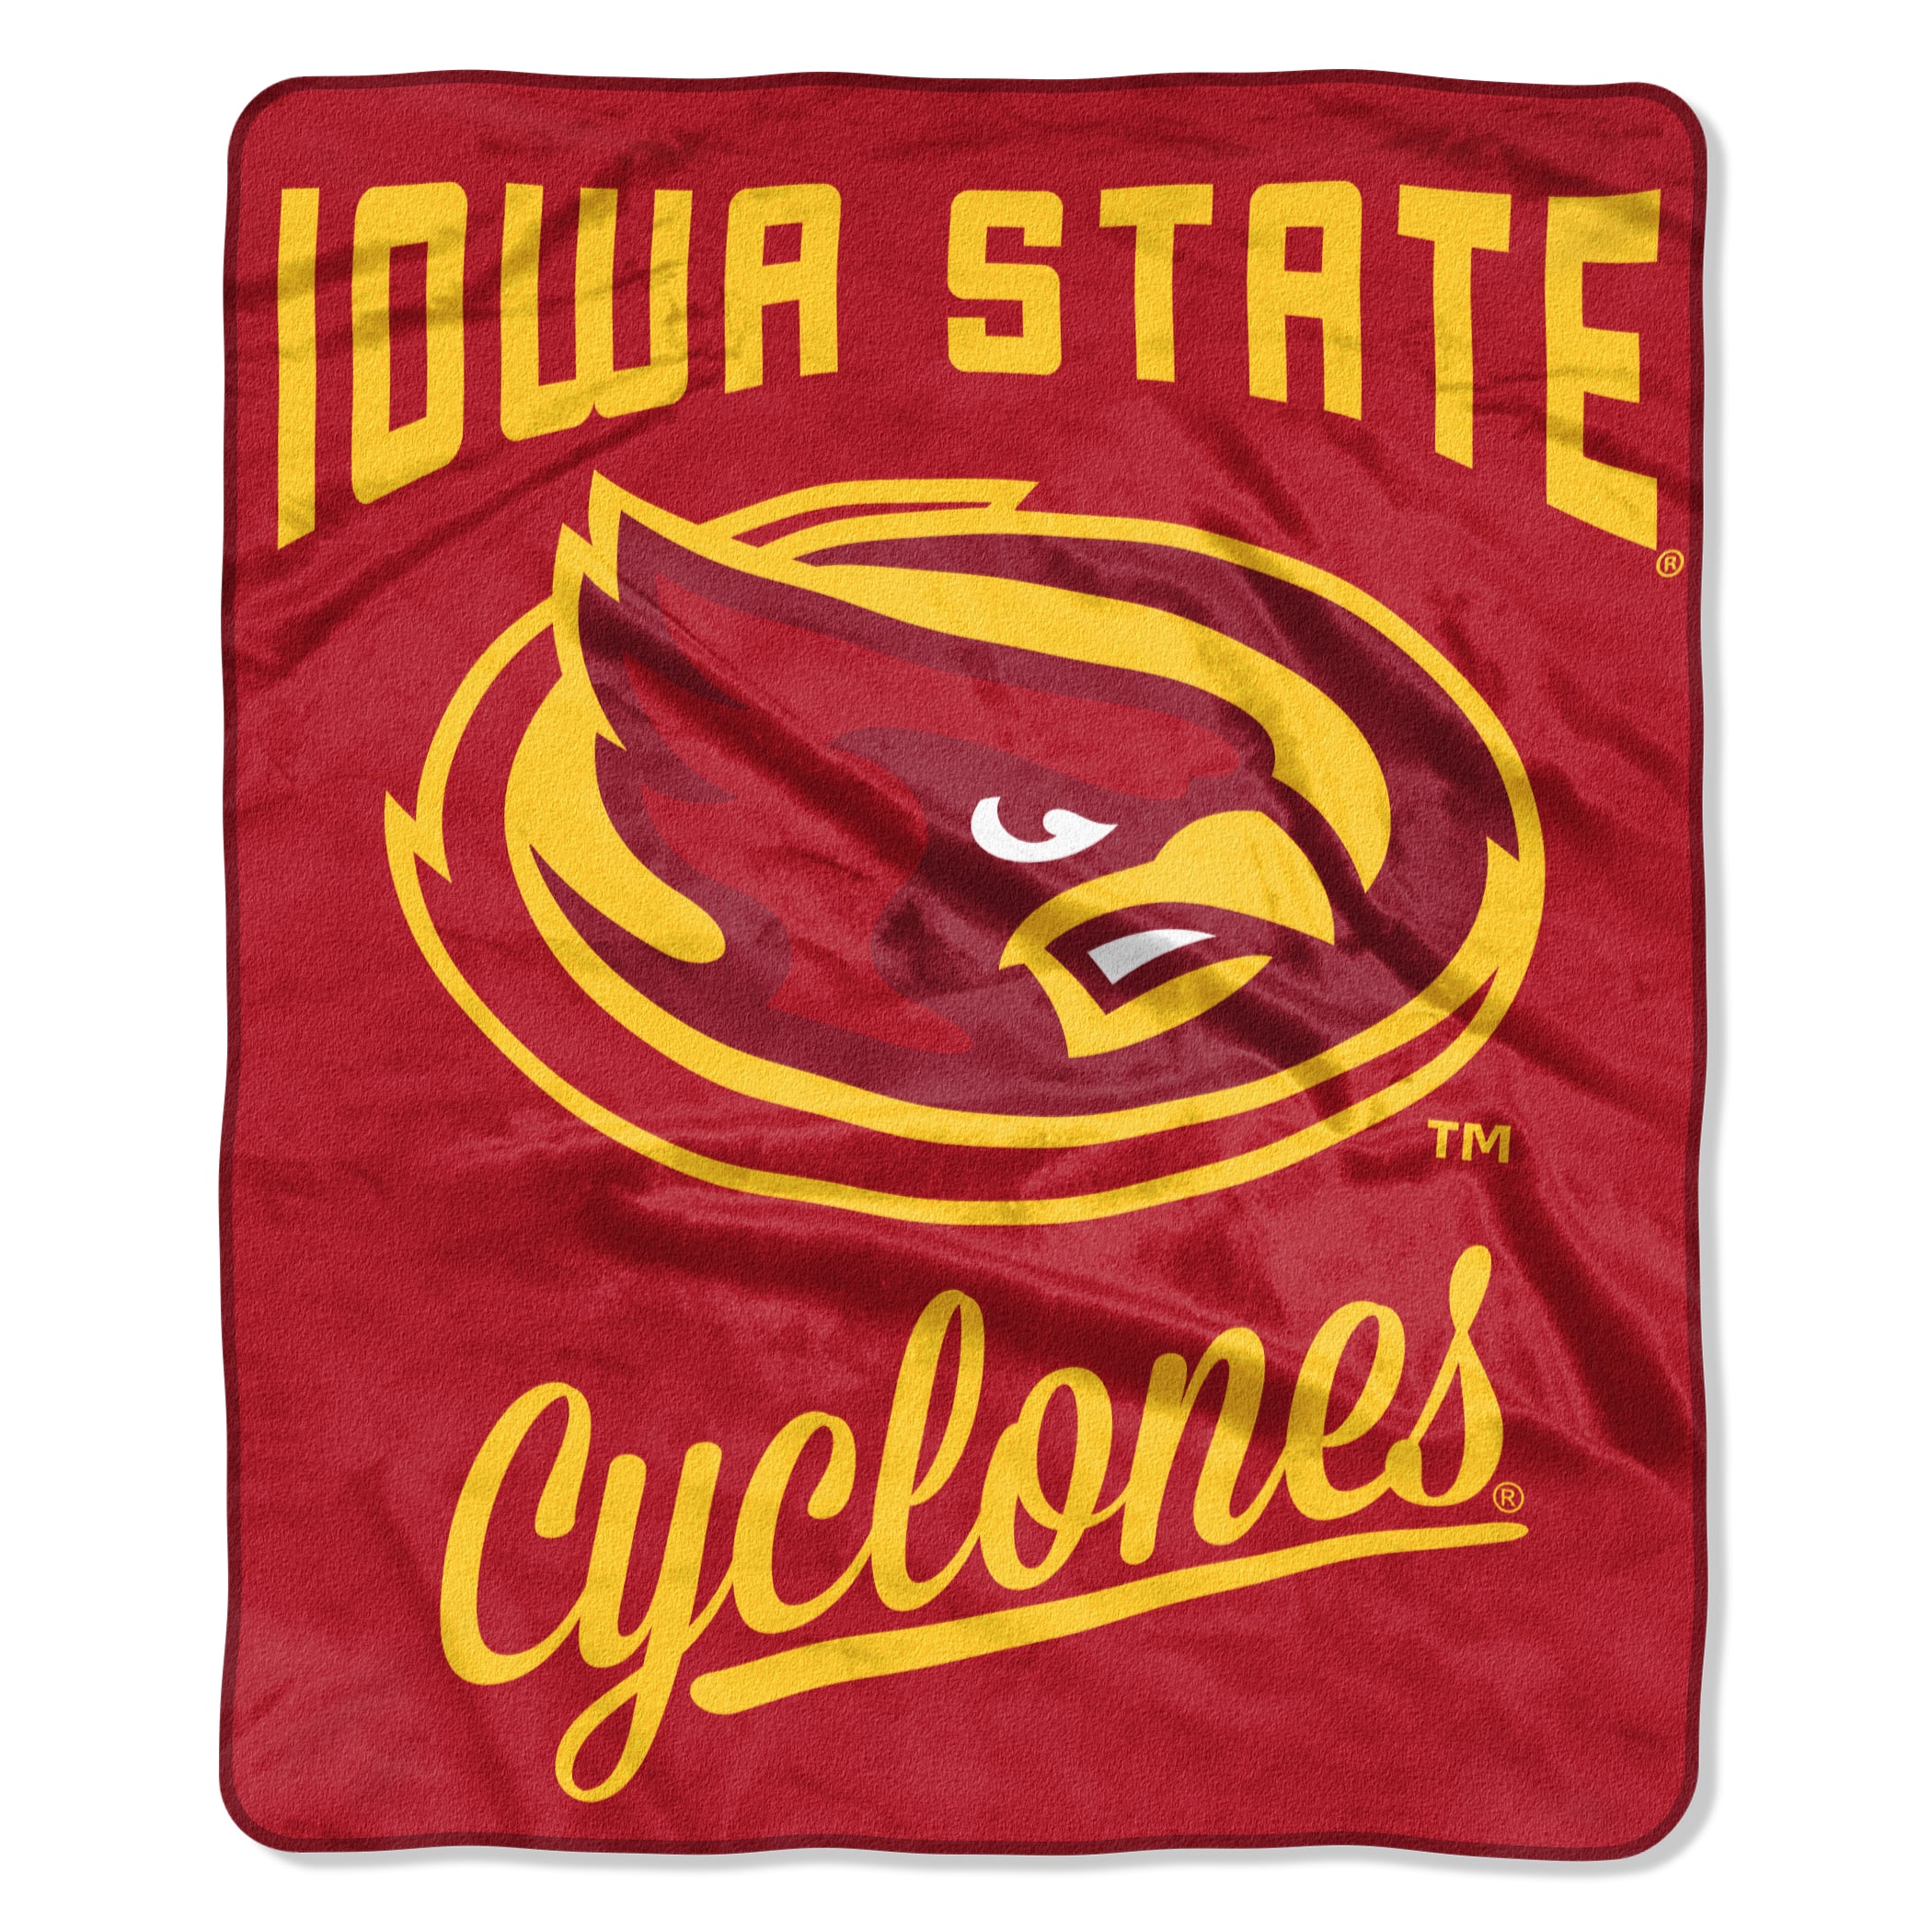 Iowa State Cyclones Blanket 50x60 Raschel Alumni Design